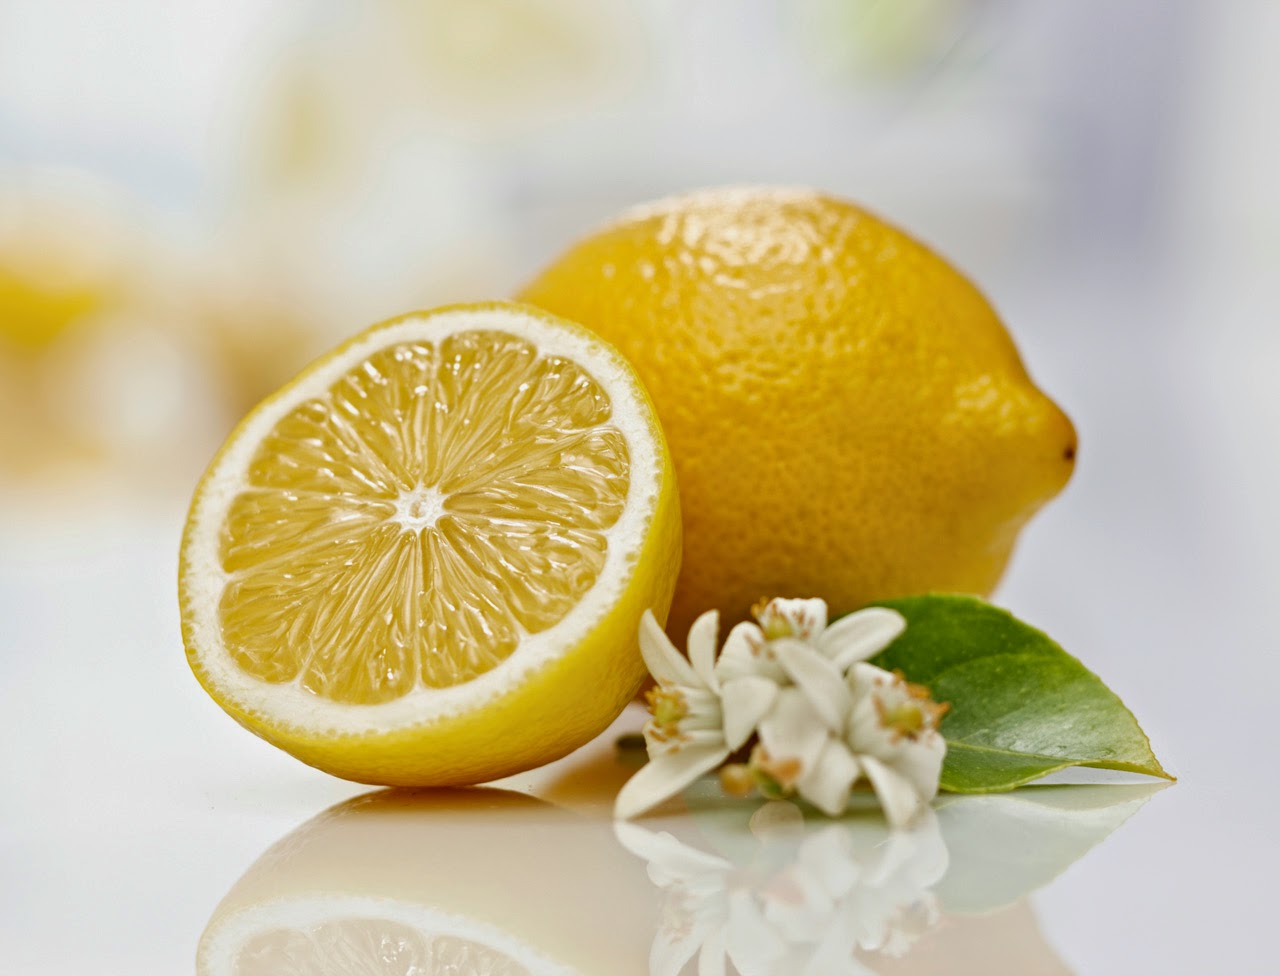 Le rgime citron: pour une taille idale en seulement sept jours